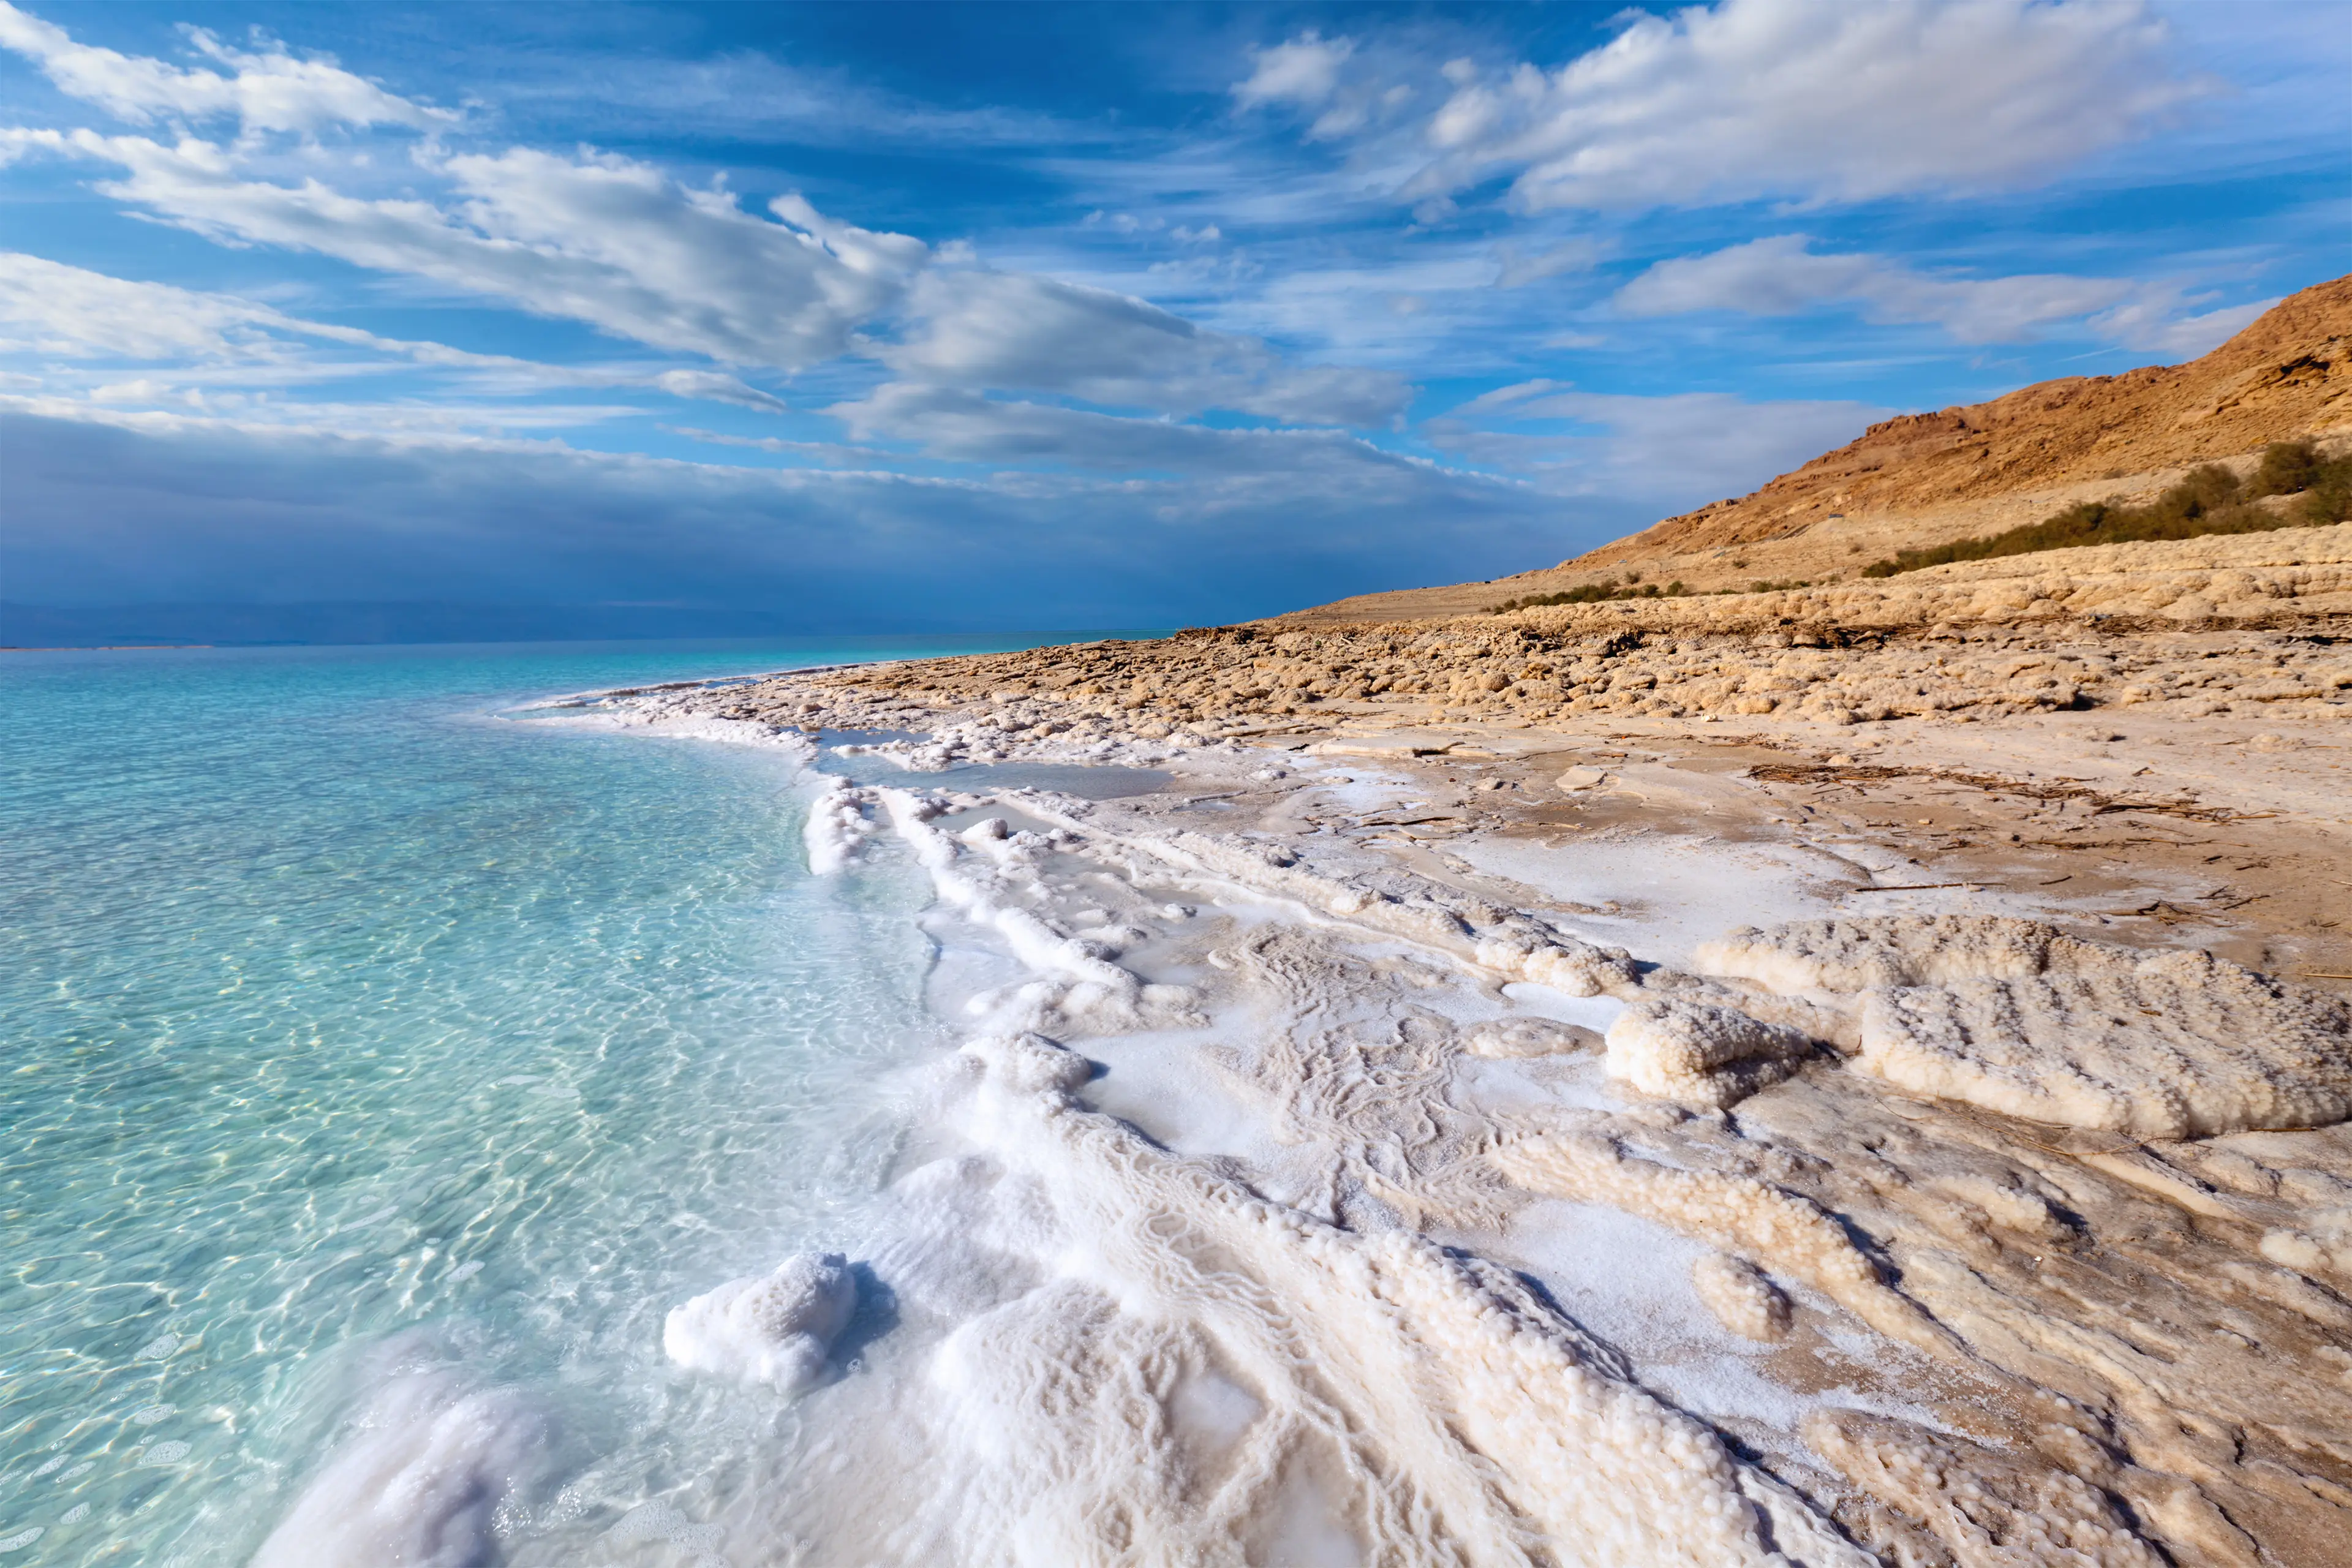 View of the Dead sea coastline